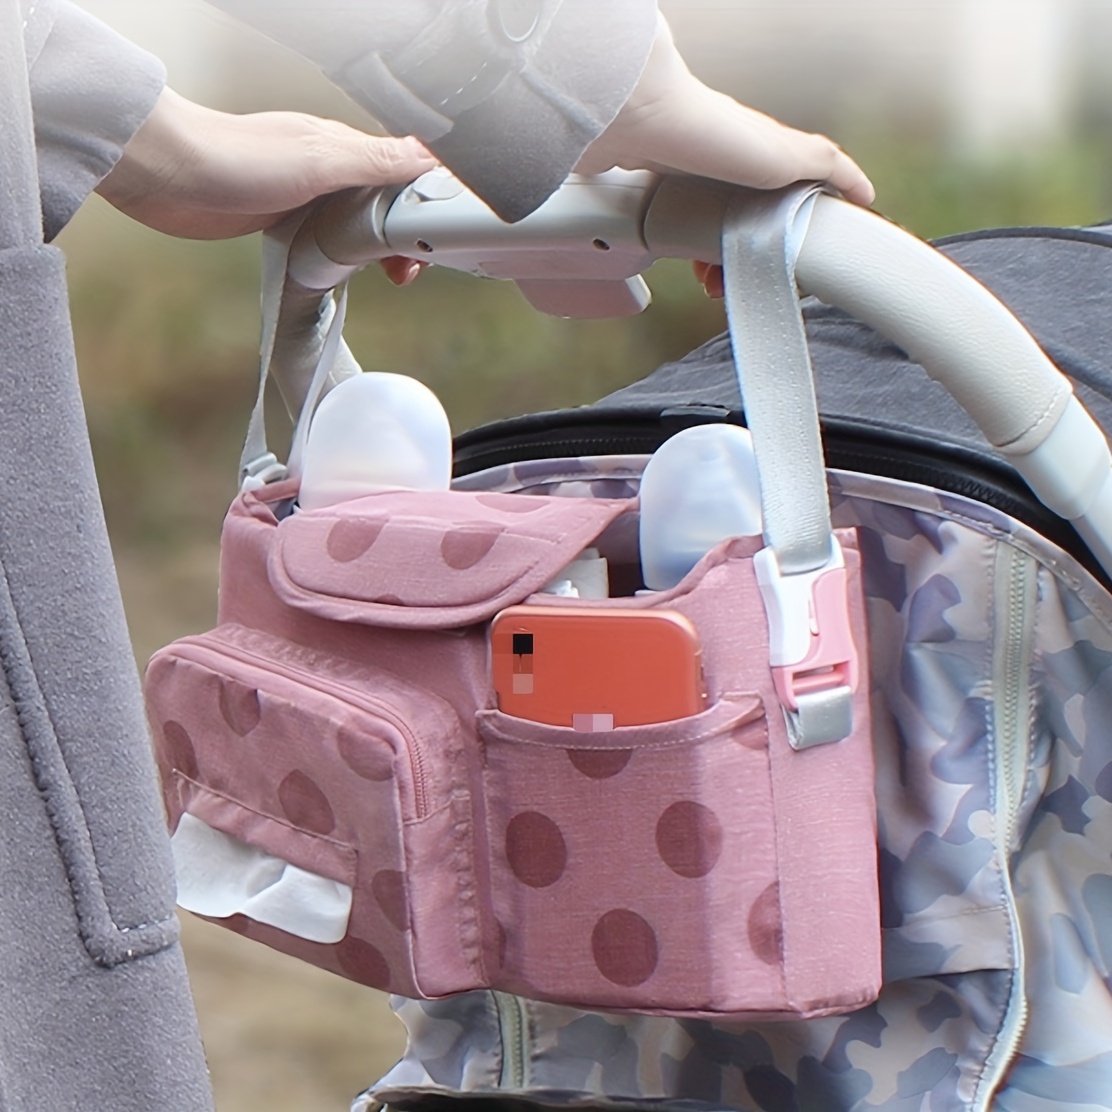 Venta de pañales para bebés en Barcelona - Backpack Baby